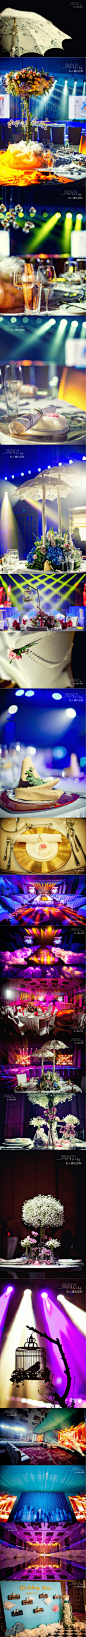 #婚礼布置#【抓住手中的爱，让我们结婚吧】首都机场希尔顿酒店婚礼体验秀 更多: http://www.lovewith.me/share/detail/all/32671